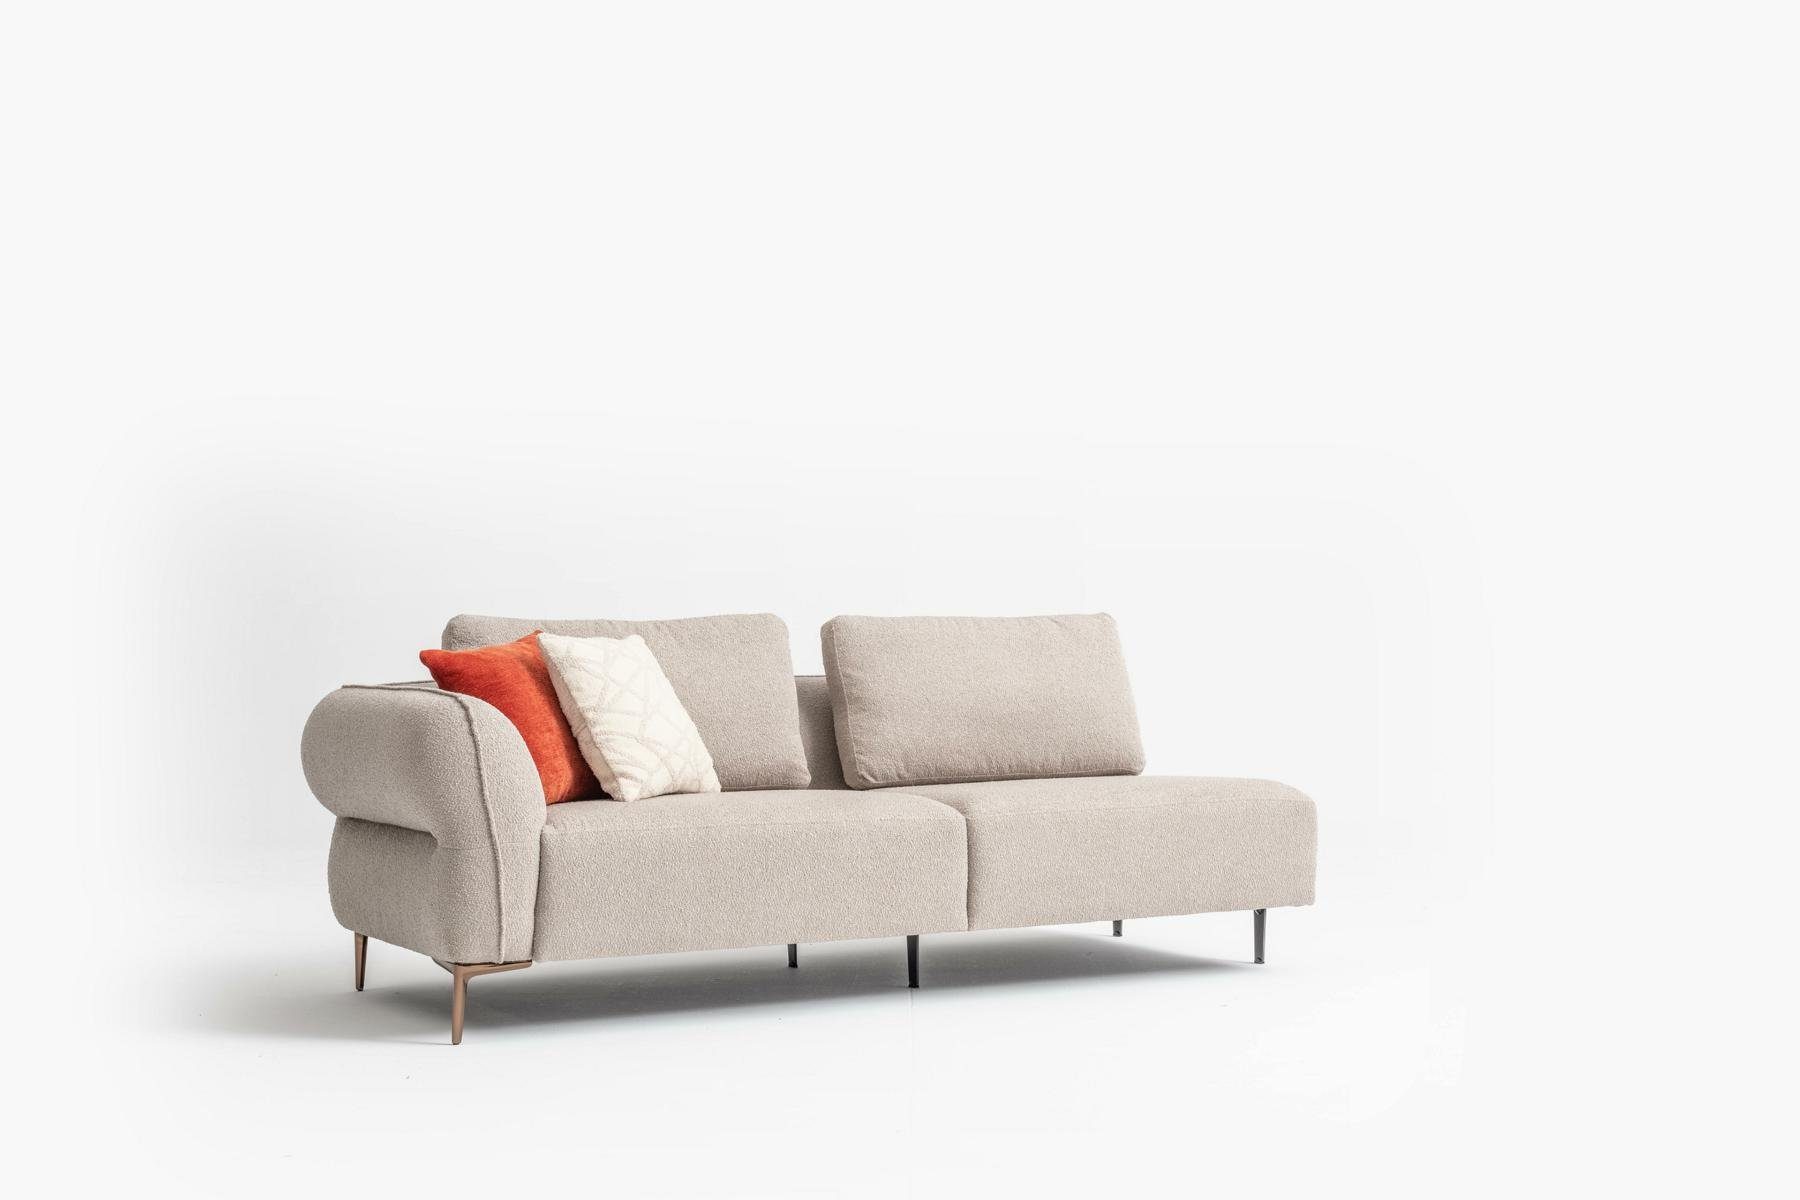 Sofas JVmoebel Europe 330x170, Wohnzimmer Ecksofa Modern L-Form Design Luxus in Made Sofa Möbel